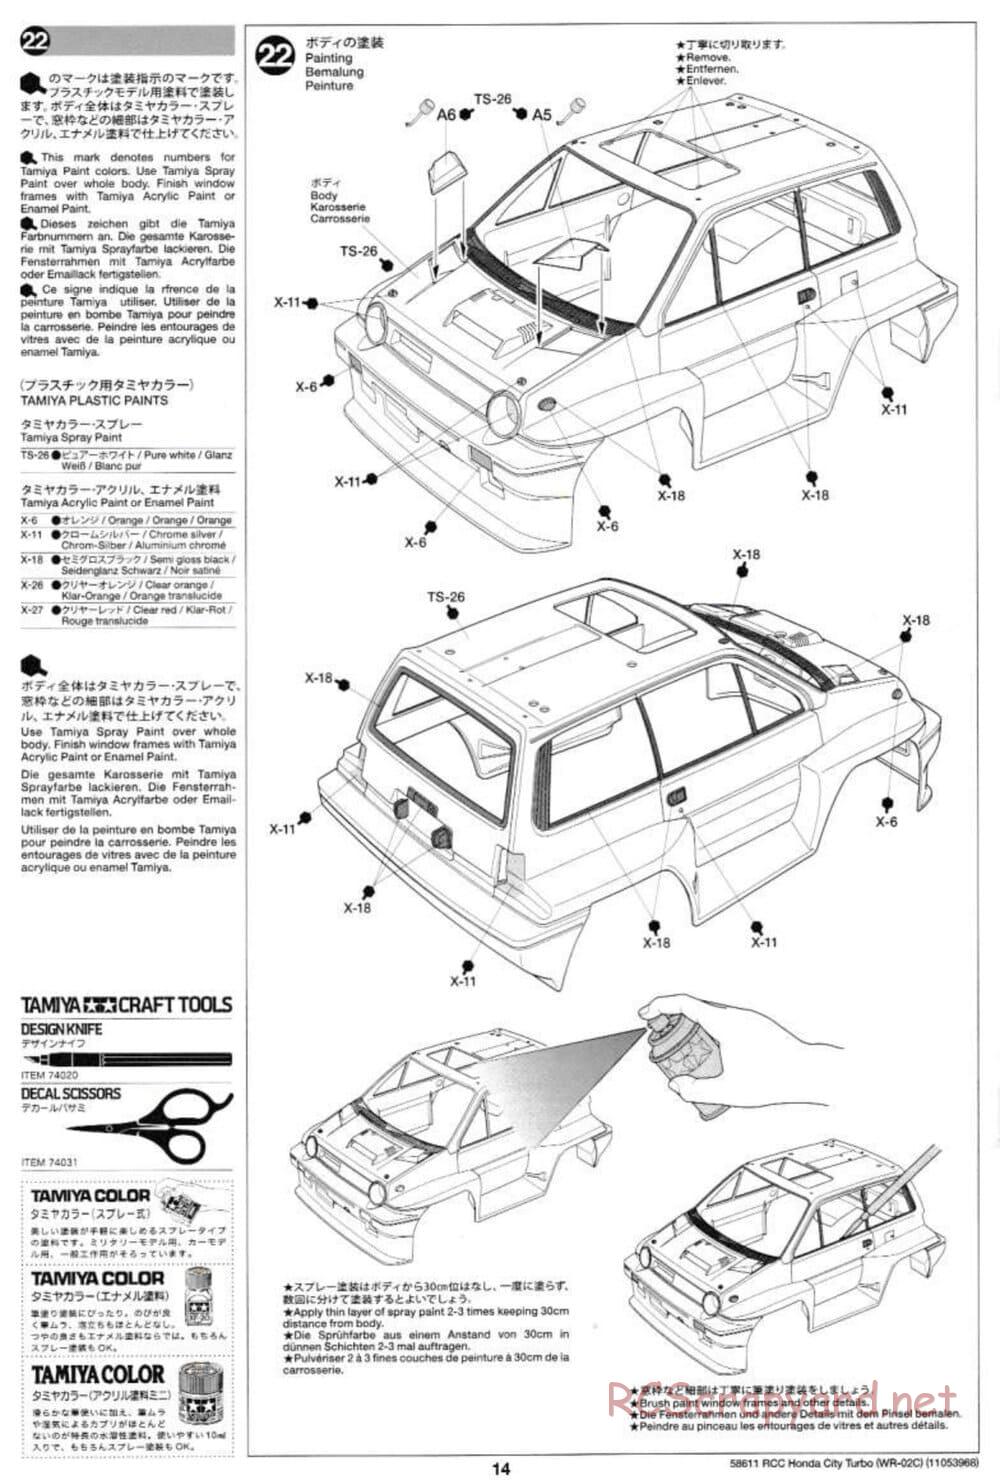 Tamiya - Honda City Turbo - WR-02C Chassis - Manual - Page 14